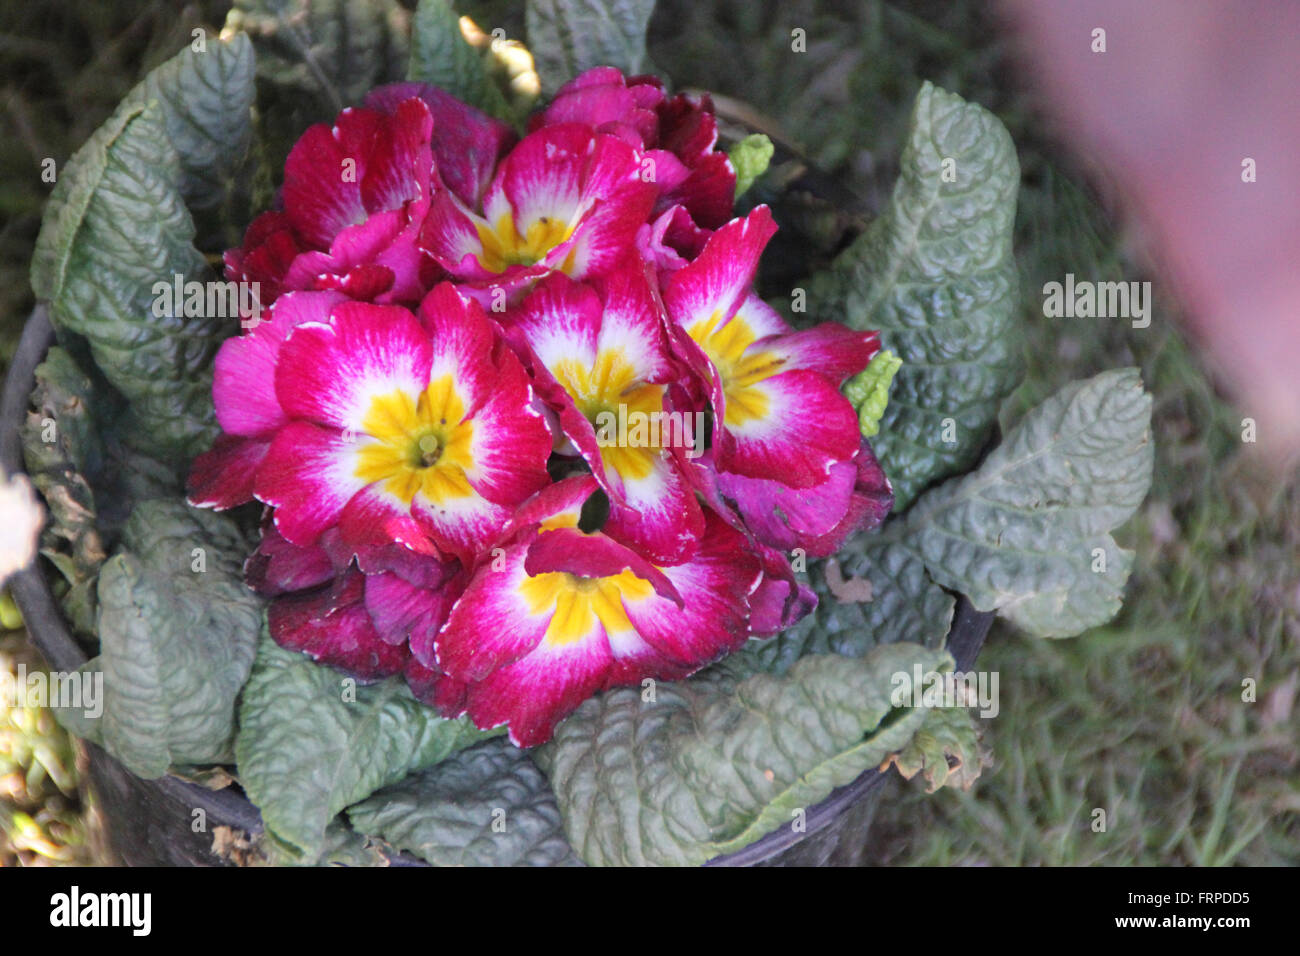 Primuka vulgaris, Famille Primulaceae, ornementales cultivées avec de la rosette basale de feuilles obovales épaisses feuilles et fleurs rouge Banque D'Images